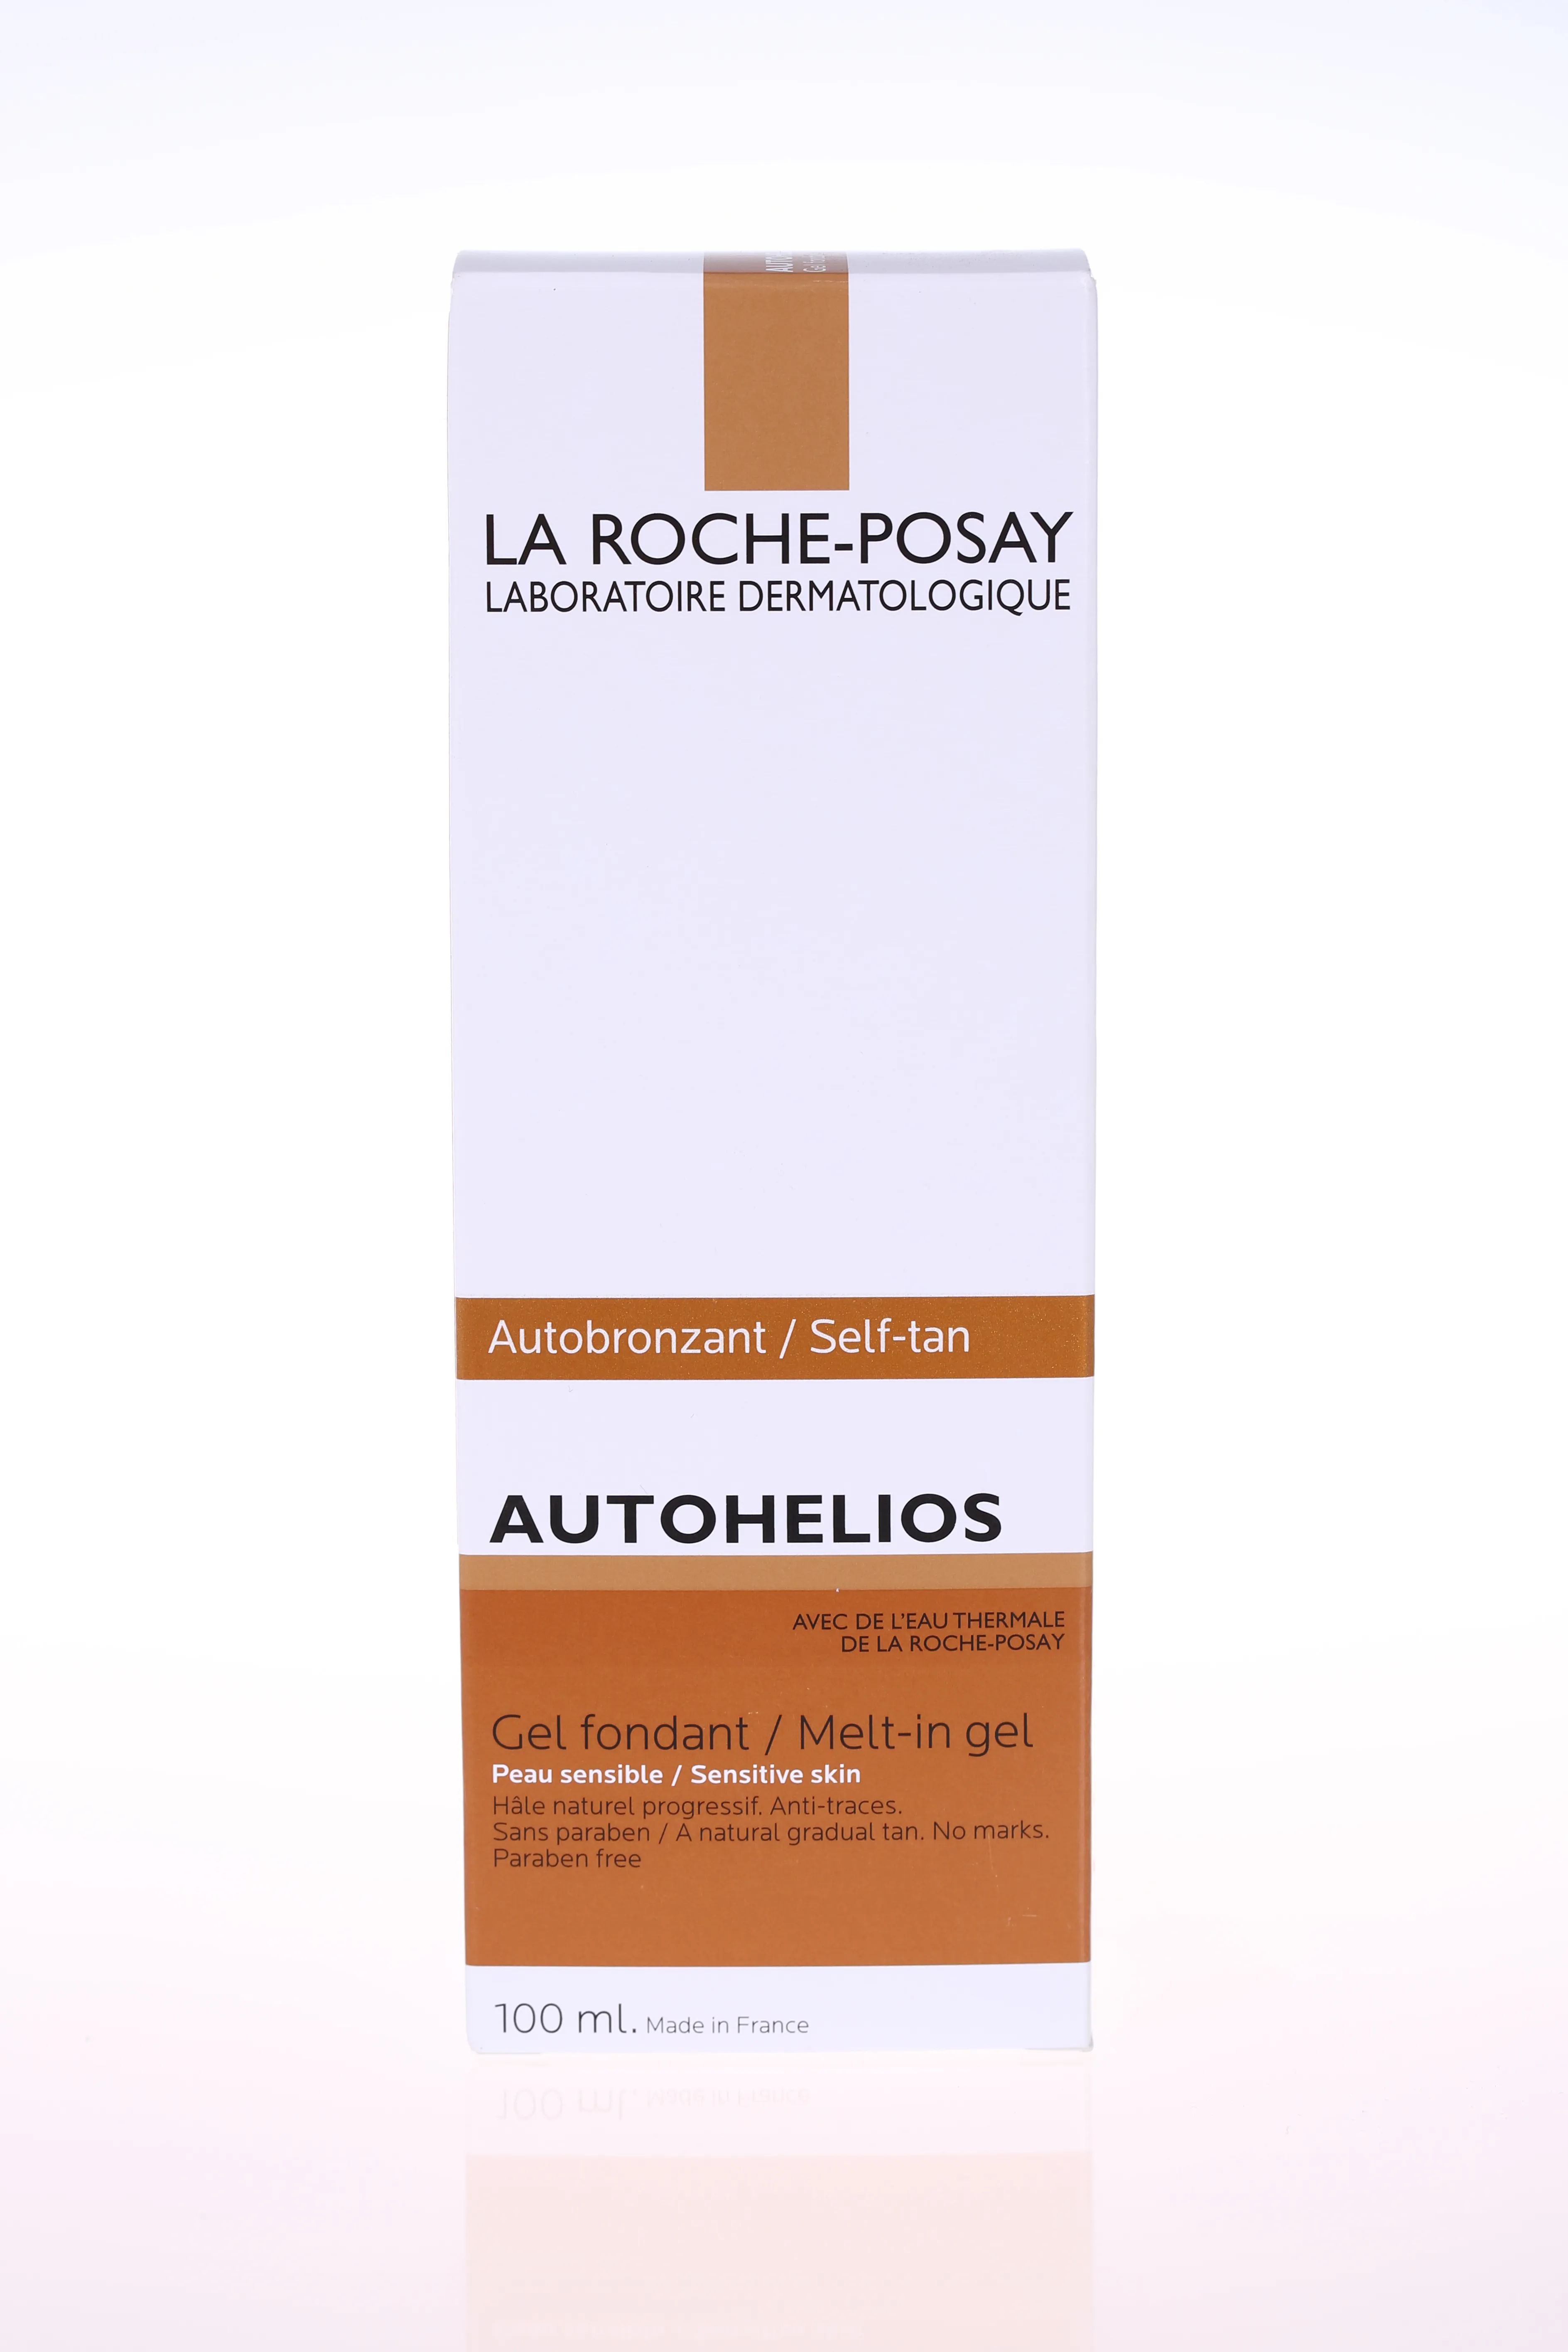 La Roche-Posay Autohelios, nawilżający żel samoopalający, 100 ml